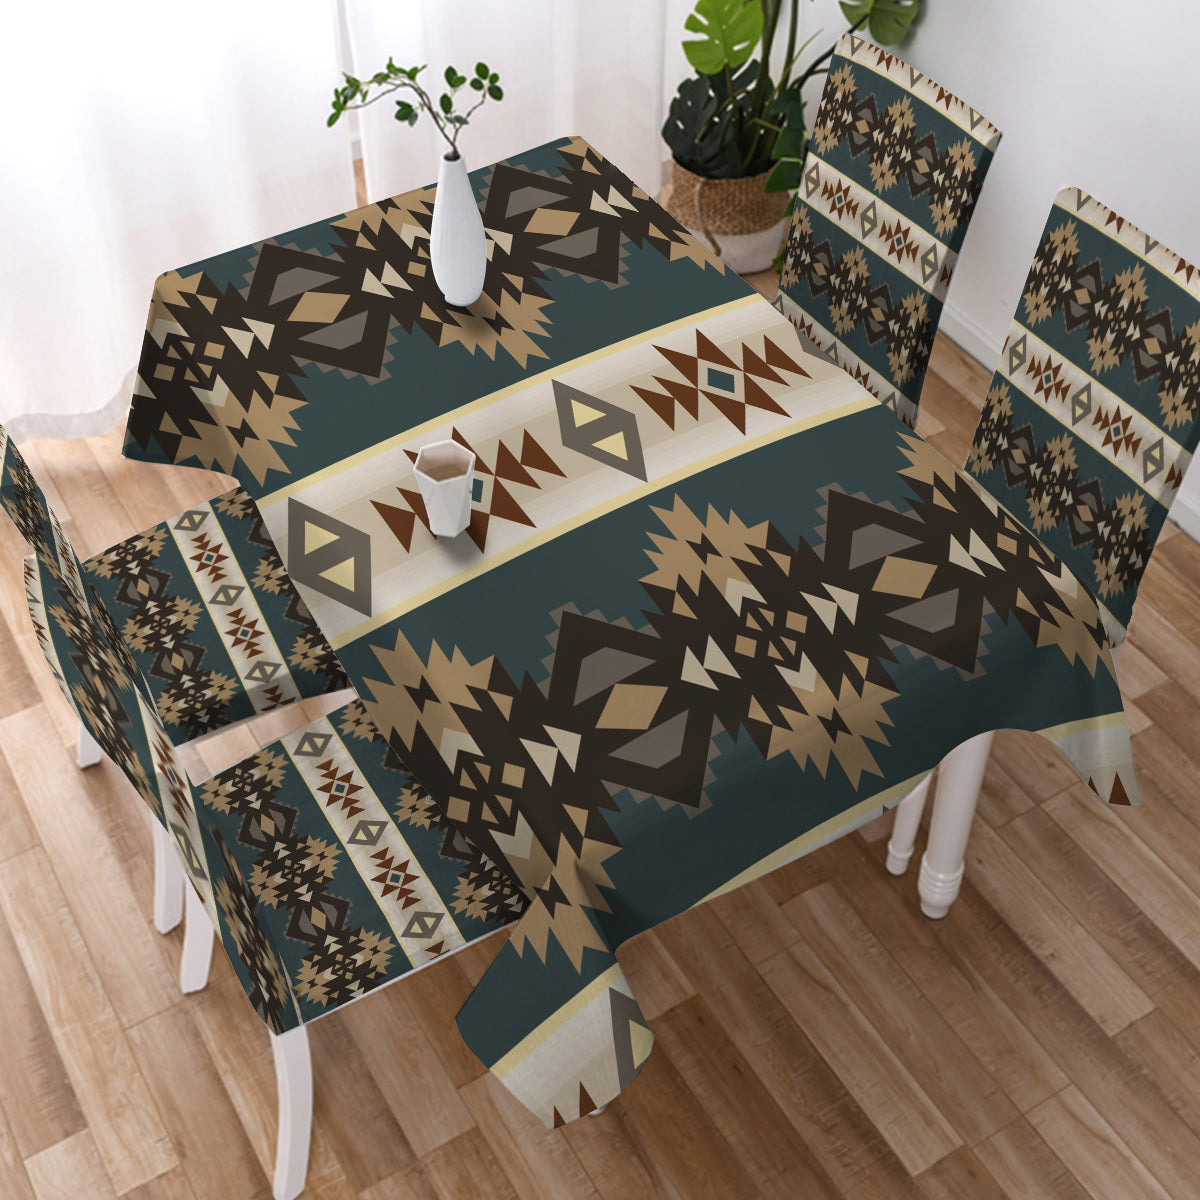 Powwow Store gb nat00609 navajo geometric seamless pattern tablecloth